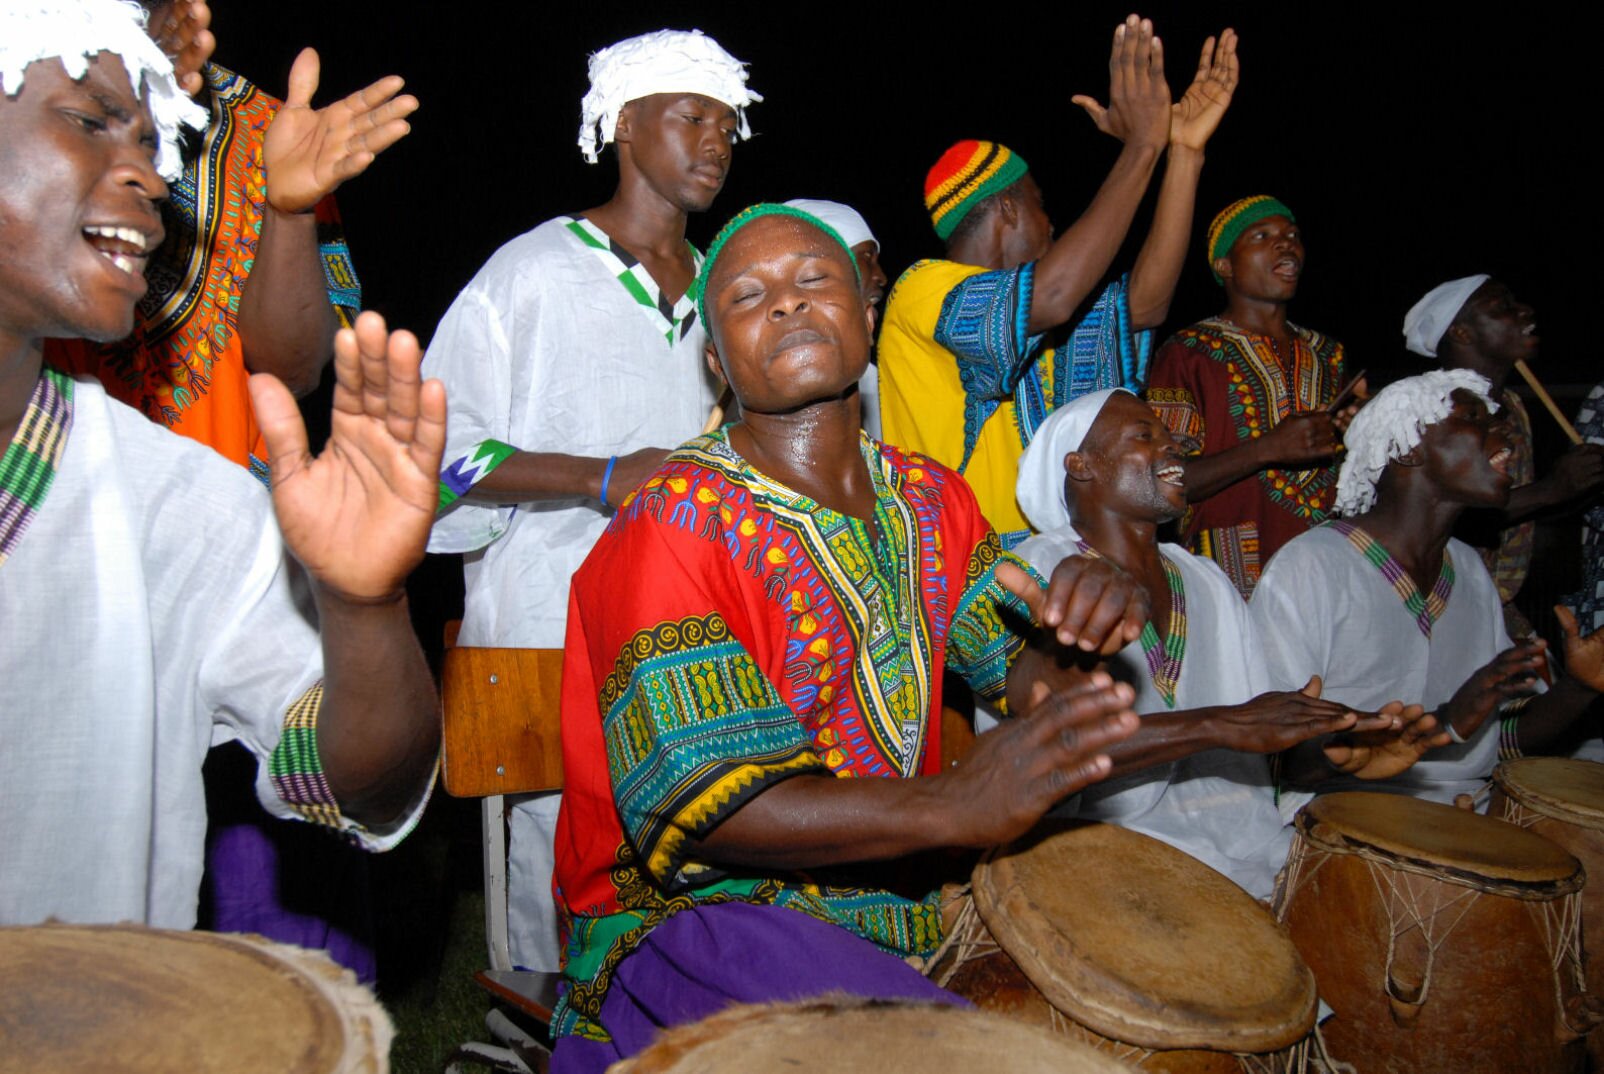 Современная африканская музыка. Музыкальная культура Африки. Музыканты африканцы. Музыкальные традиции народов Африки. Африканский барабан.